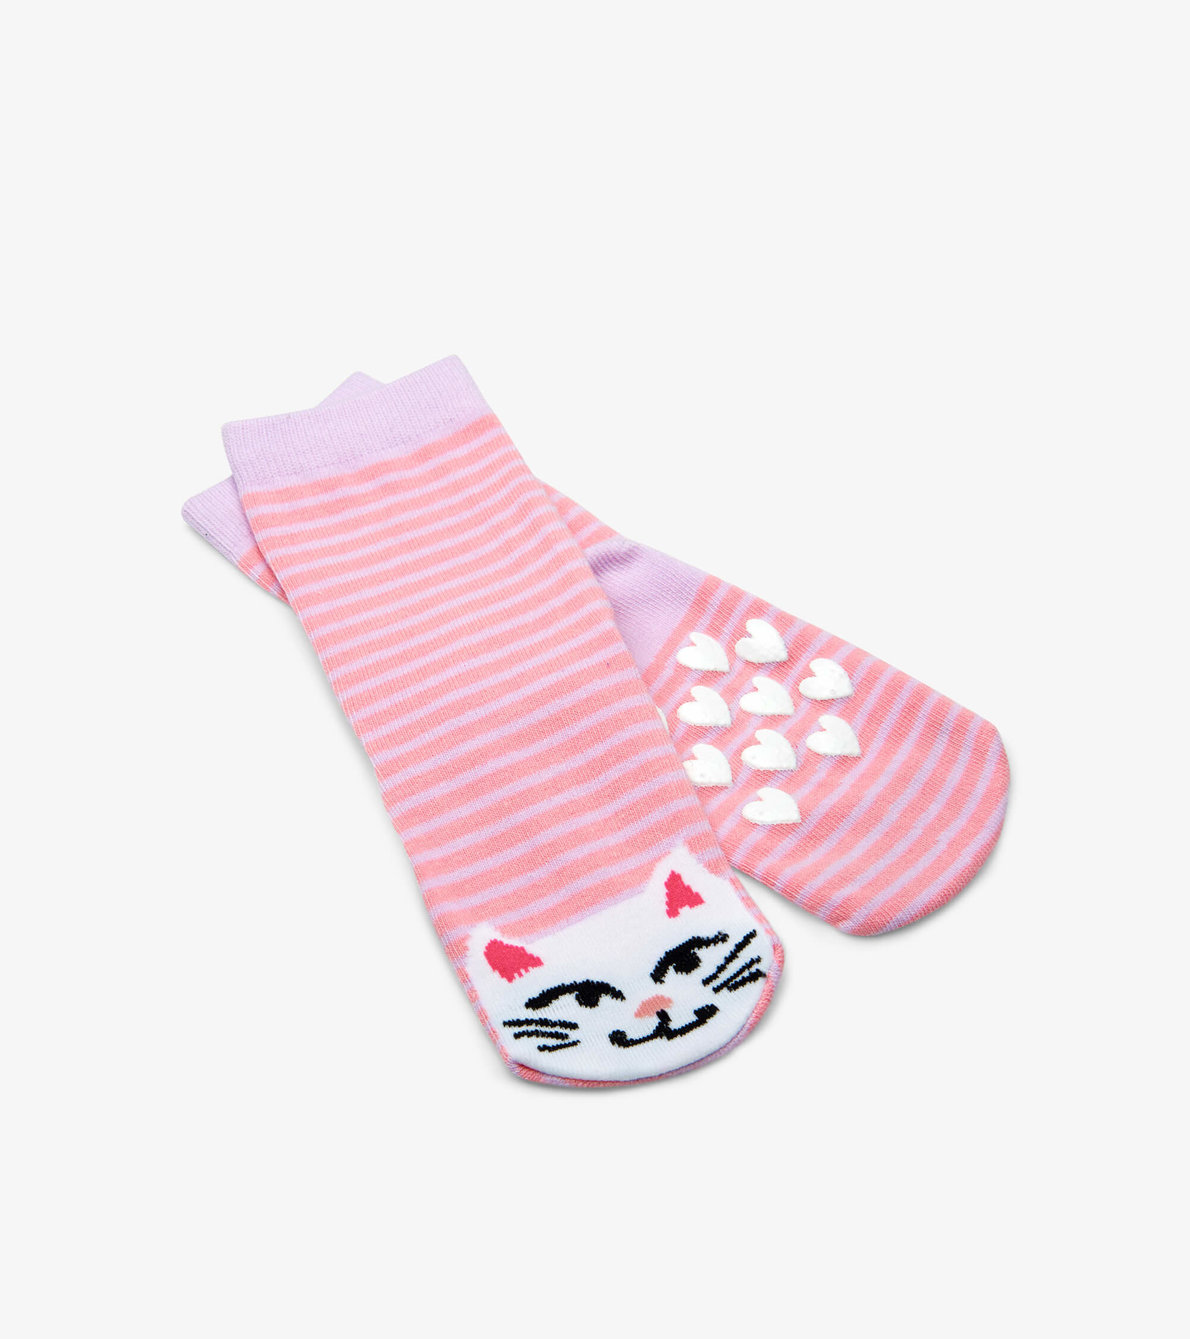 View larger image of Cat Kids Animal Socks